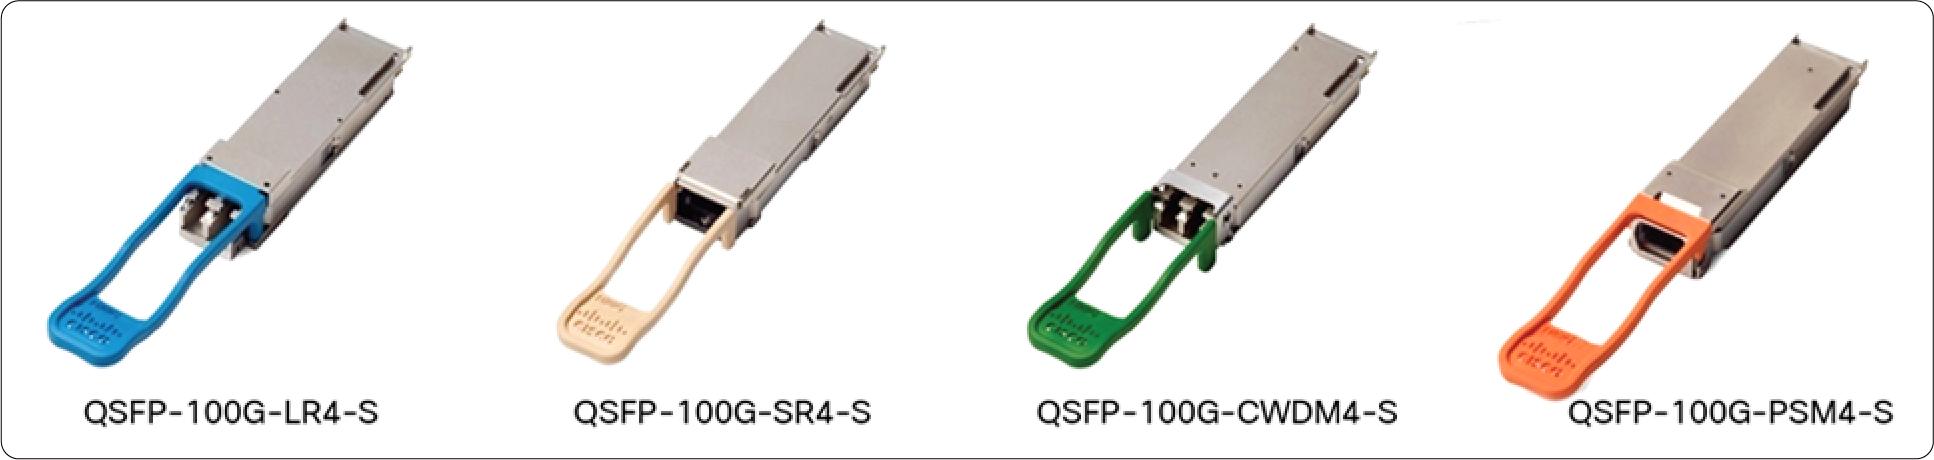 QSFP-100G-AOC10M Cisco 100 Gigabit Modules - Cisco 100GBASE QSFP Modules - 2